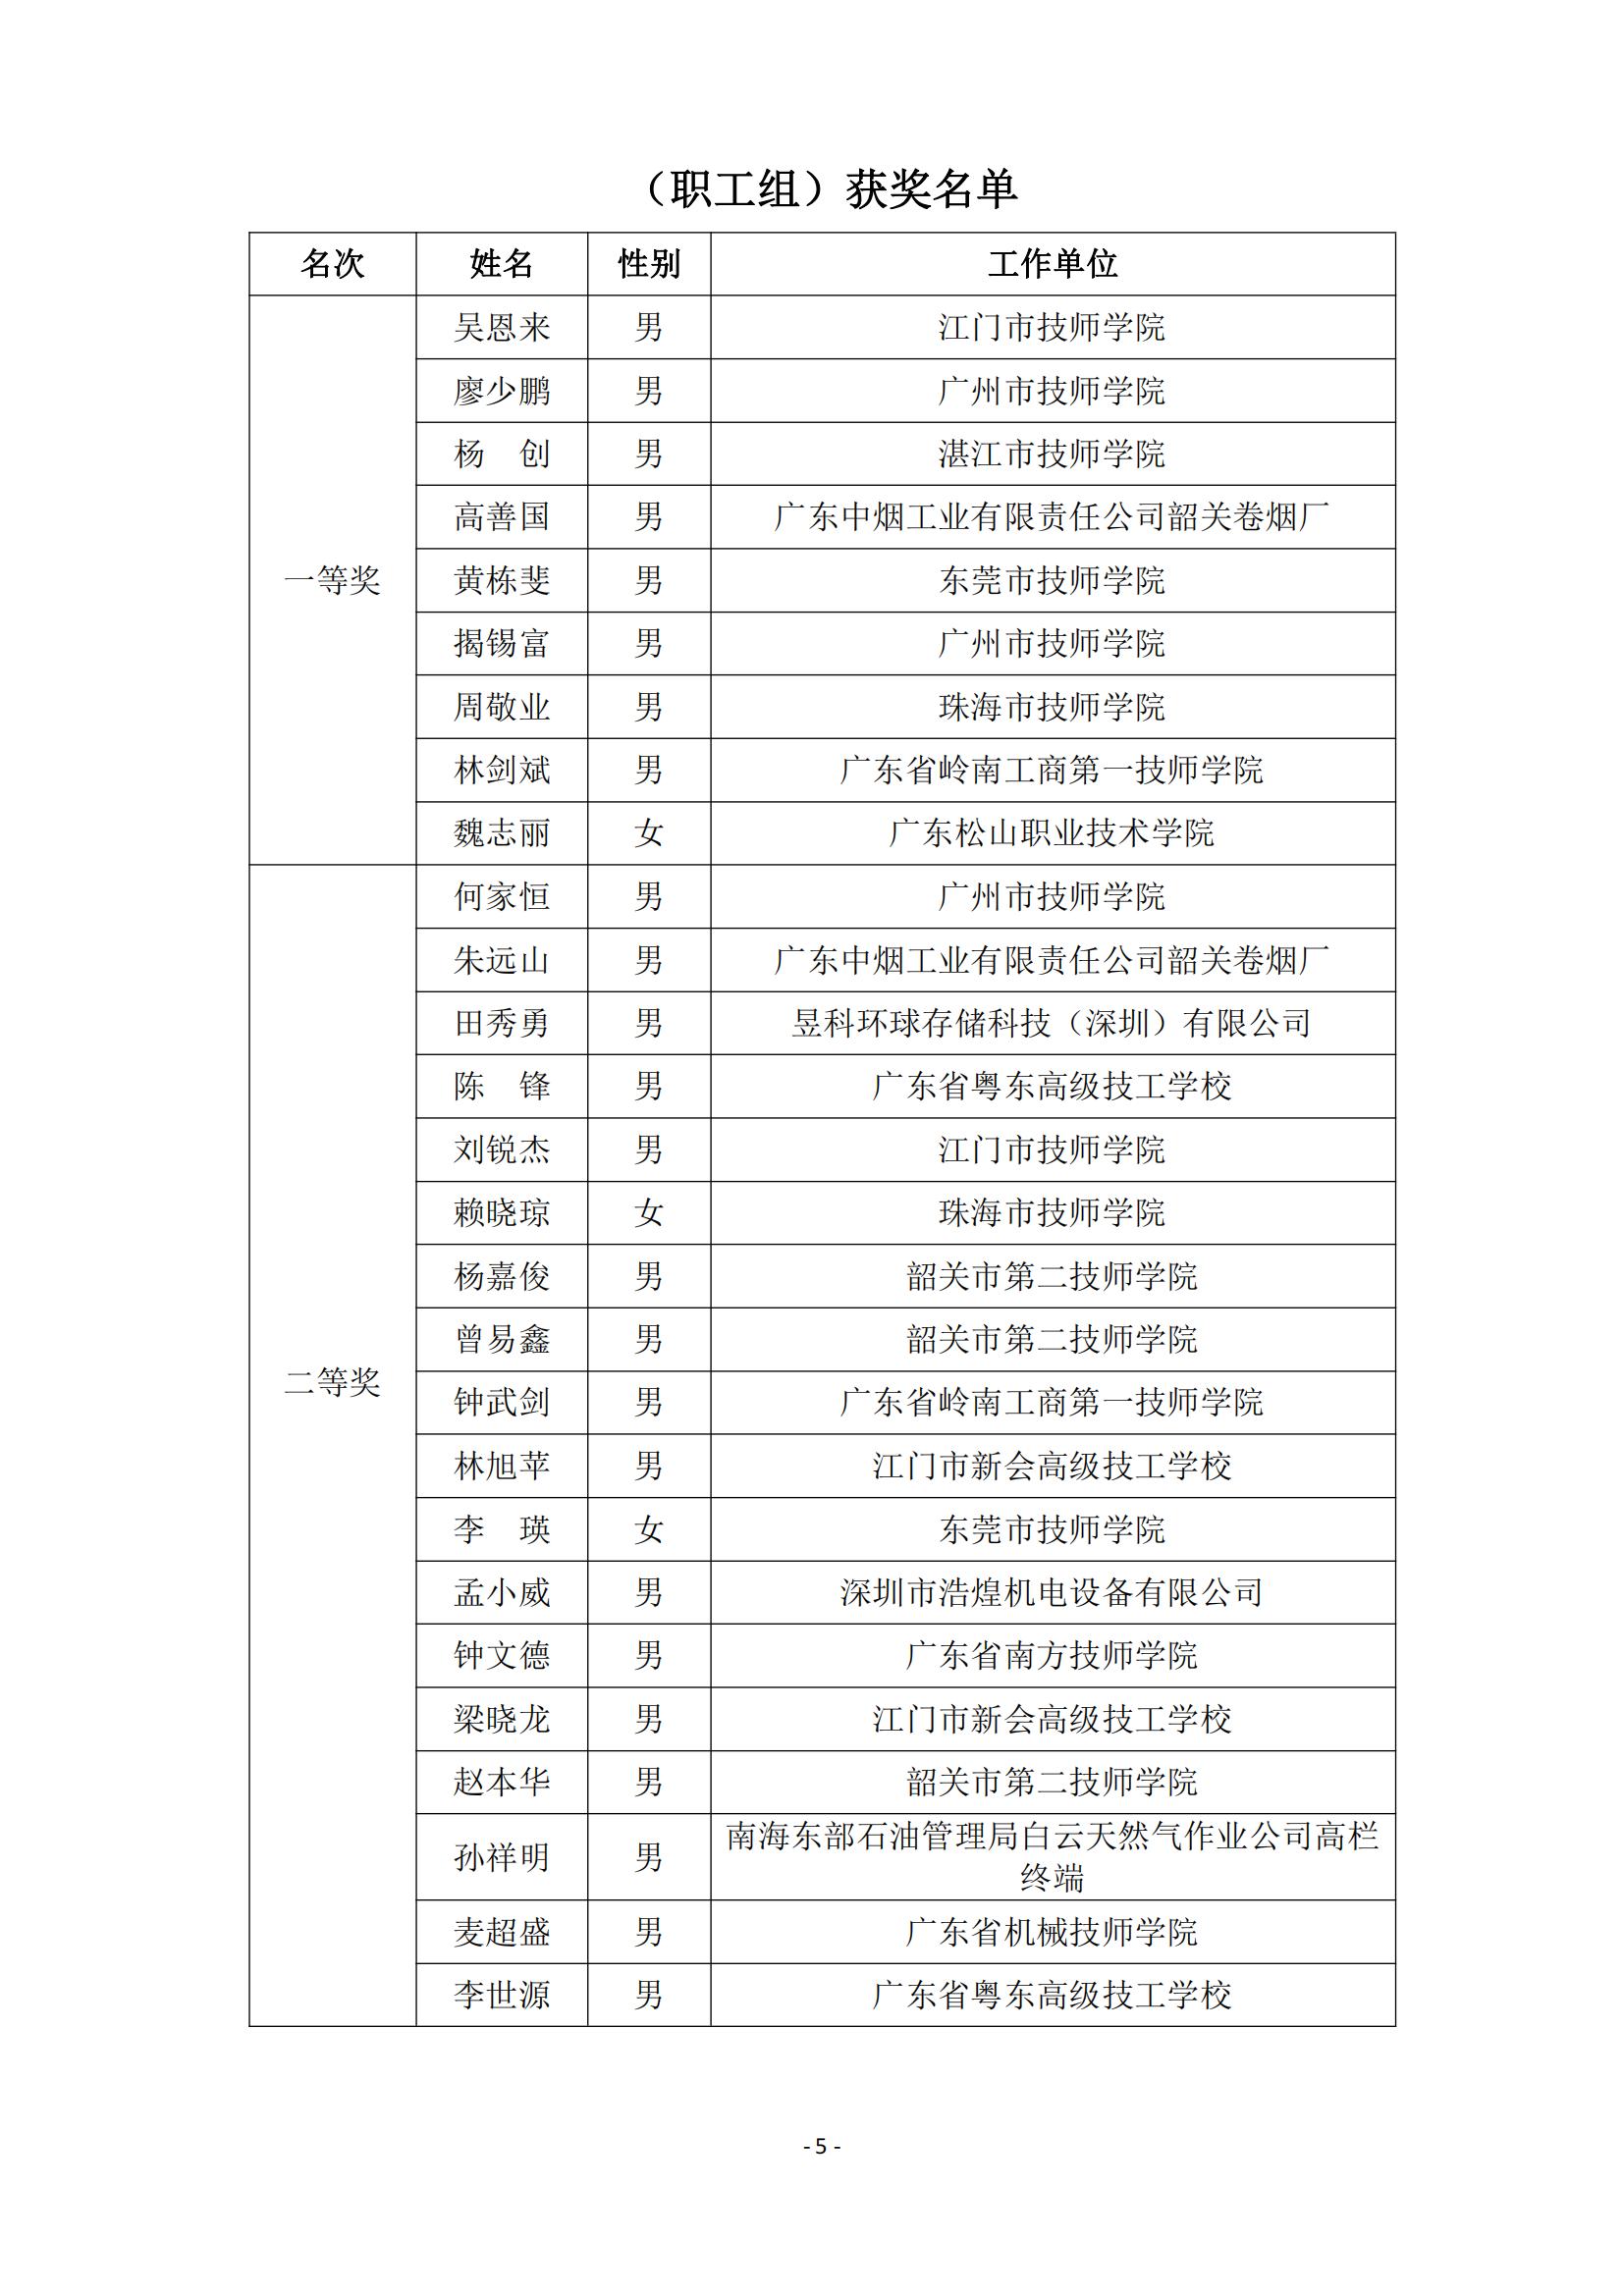 2015 年中国技能大赛--广东省机电一体化职业技能竞赛_04.jpg